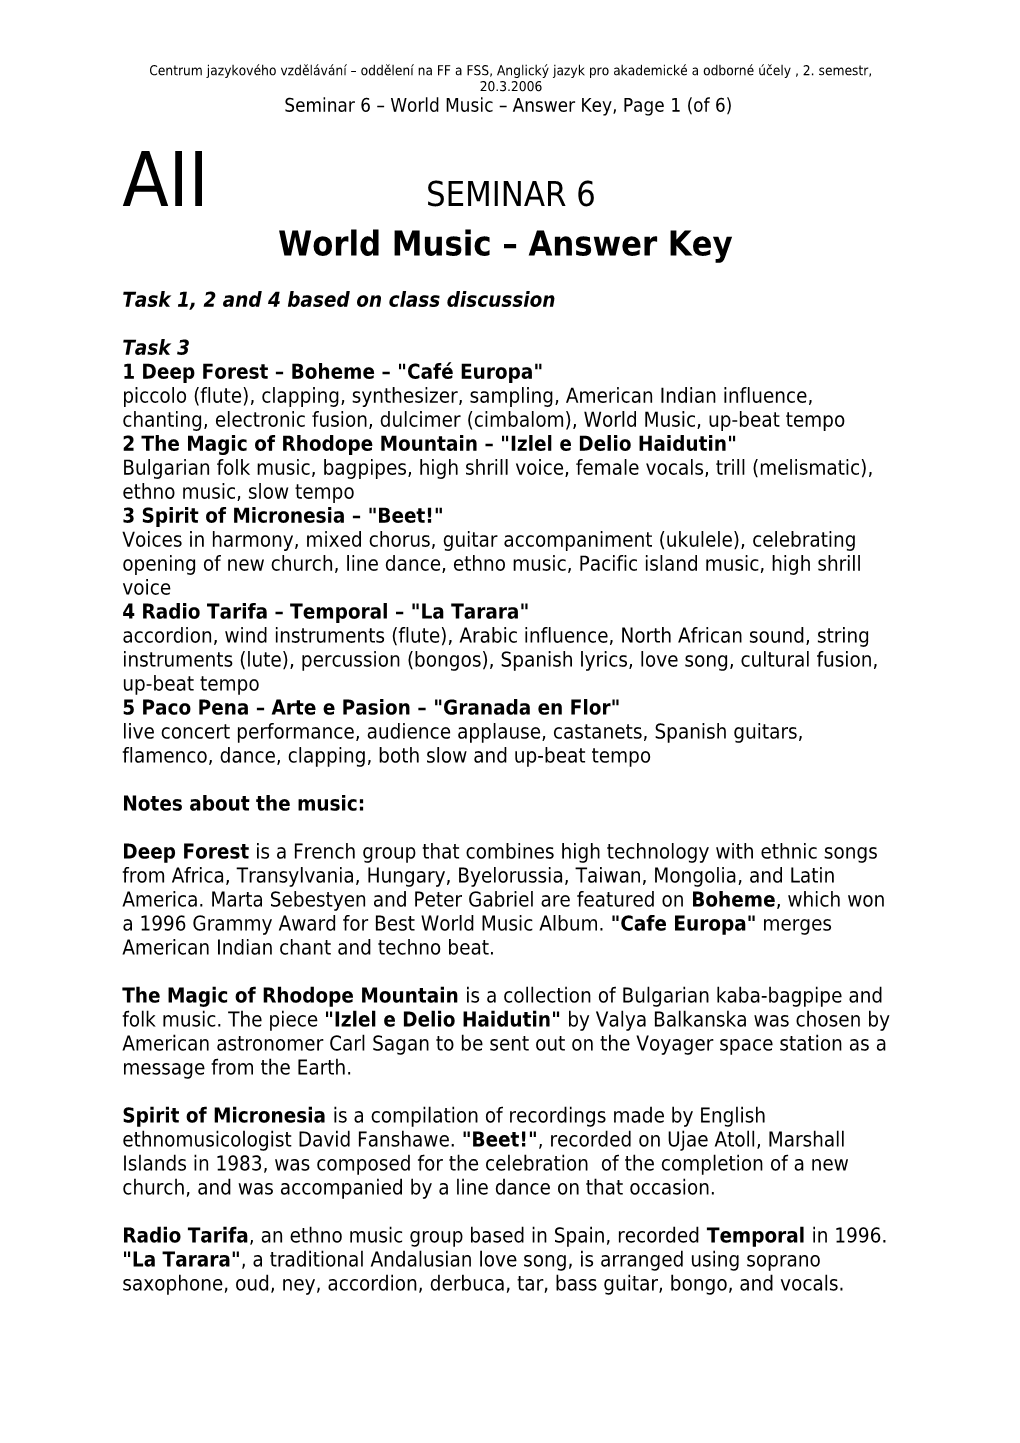 Seminar 6 World Music Answer Key, Page 1 (Of 5)